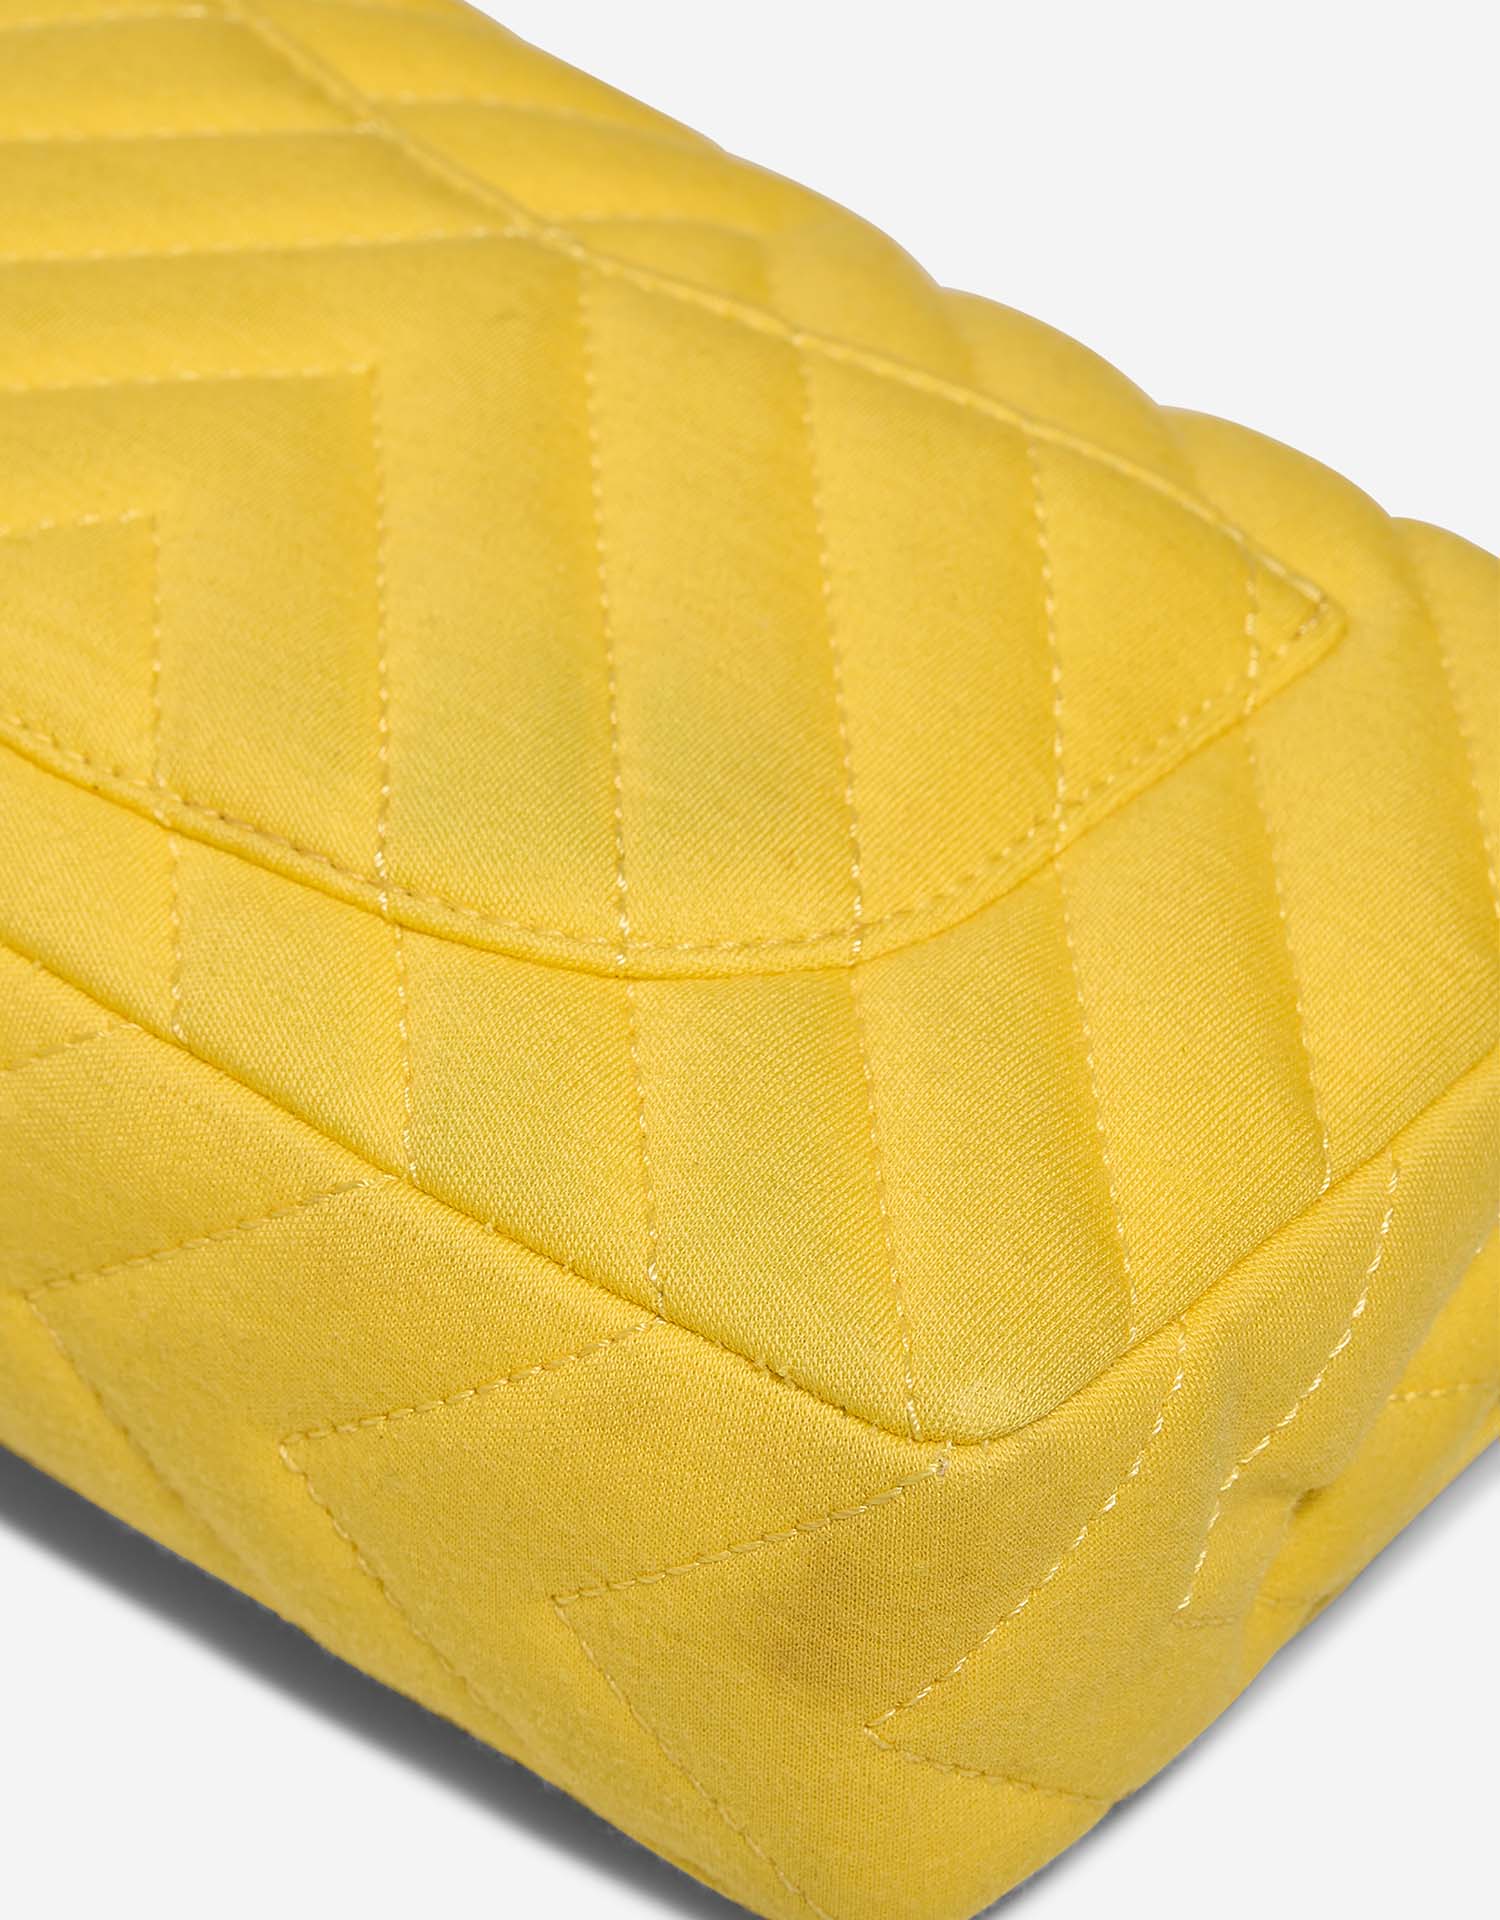 Chanel Timeless Medium Gelb Gebrauchsspuren | Verkaufen Sie Ihre Designer-Tasche auf Saclab.com